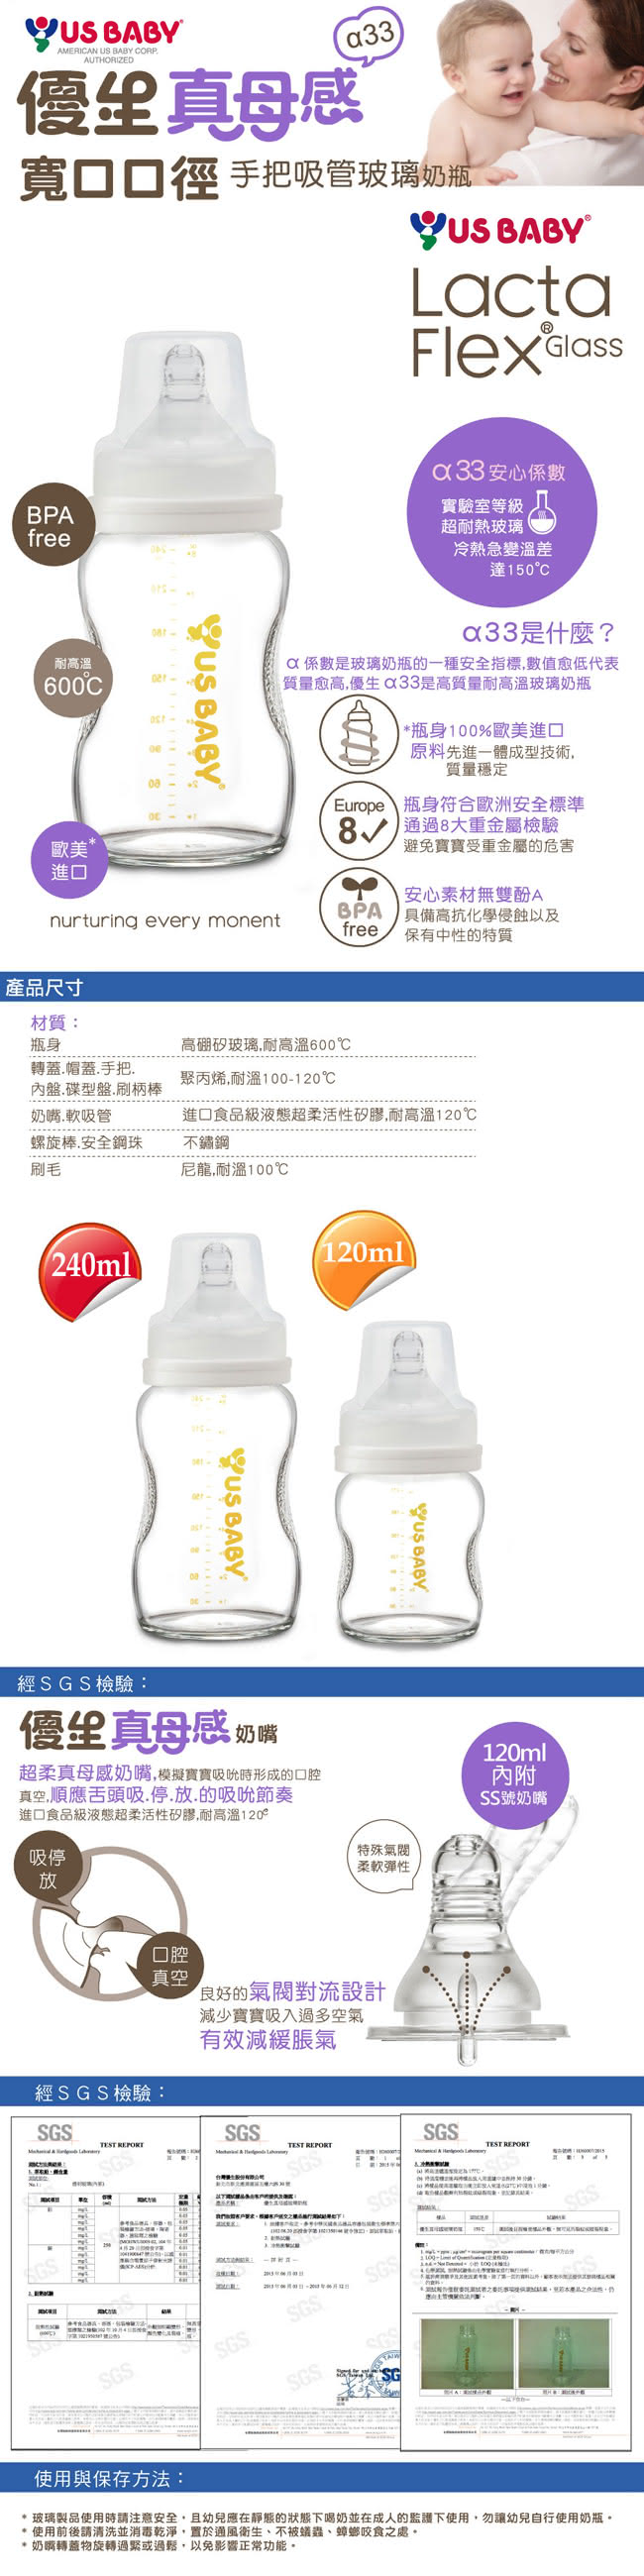 【優生】真母感玻璃奶瓶(寬口口徑120ml)